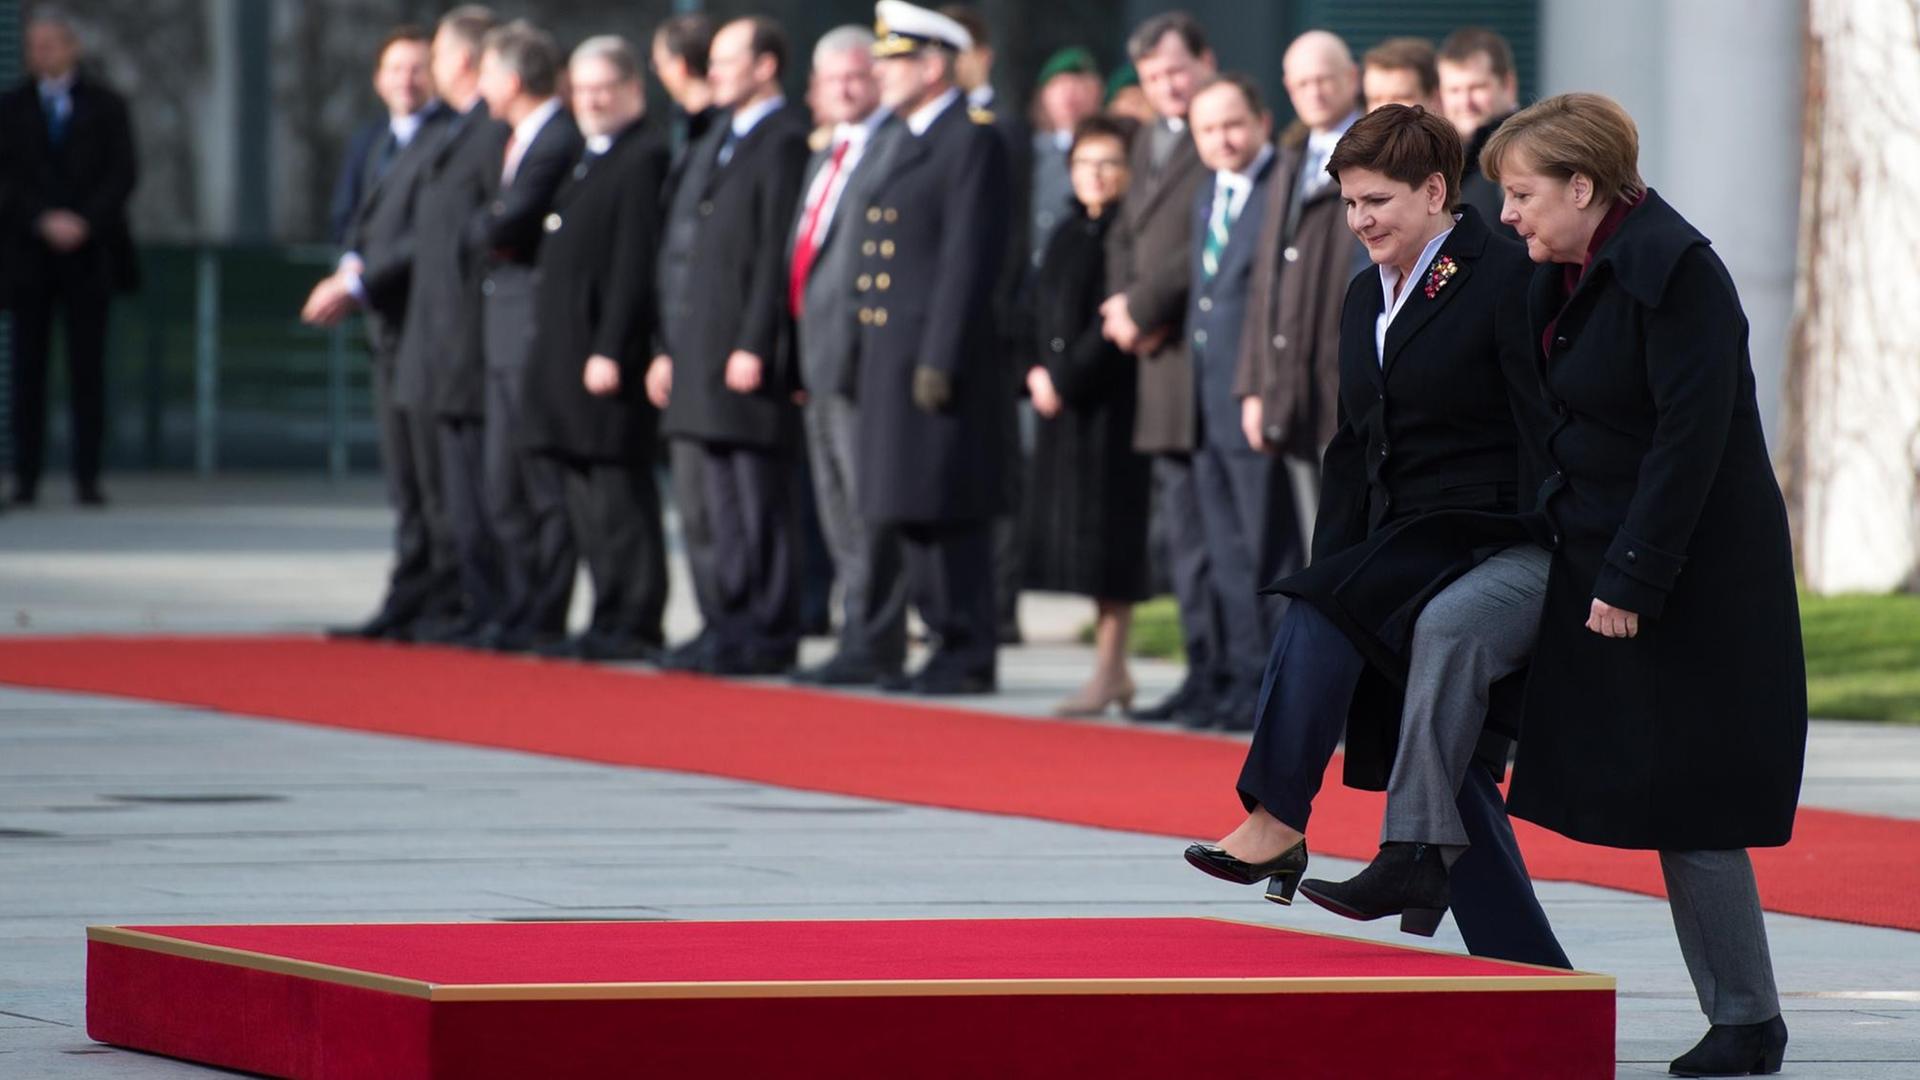 Bundeskanzlerin Angela Merkel (r, CDU) begrüßt Beata Szydlo, die neue Ministerpräsidentin von Polen, am 12.02.2016 vor dem Bundeskanzleramt in Berlin mit militärischen Ehren